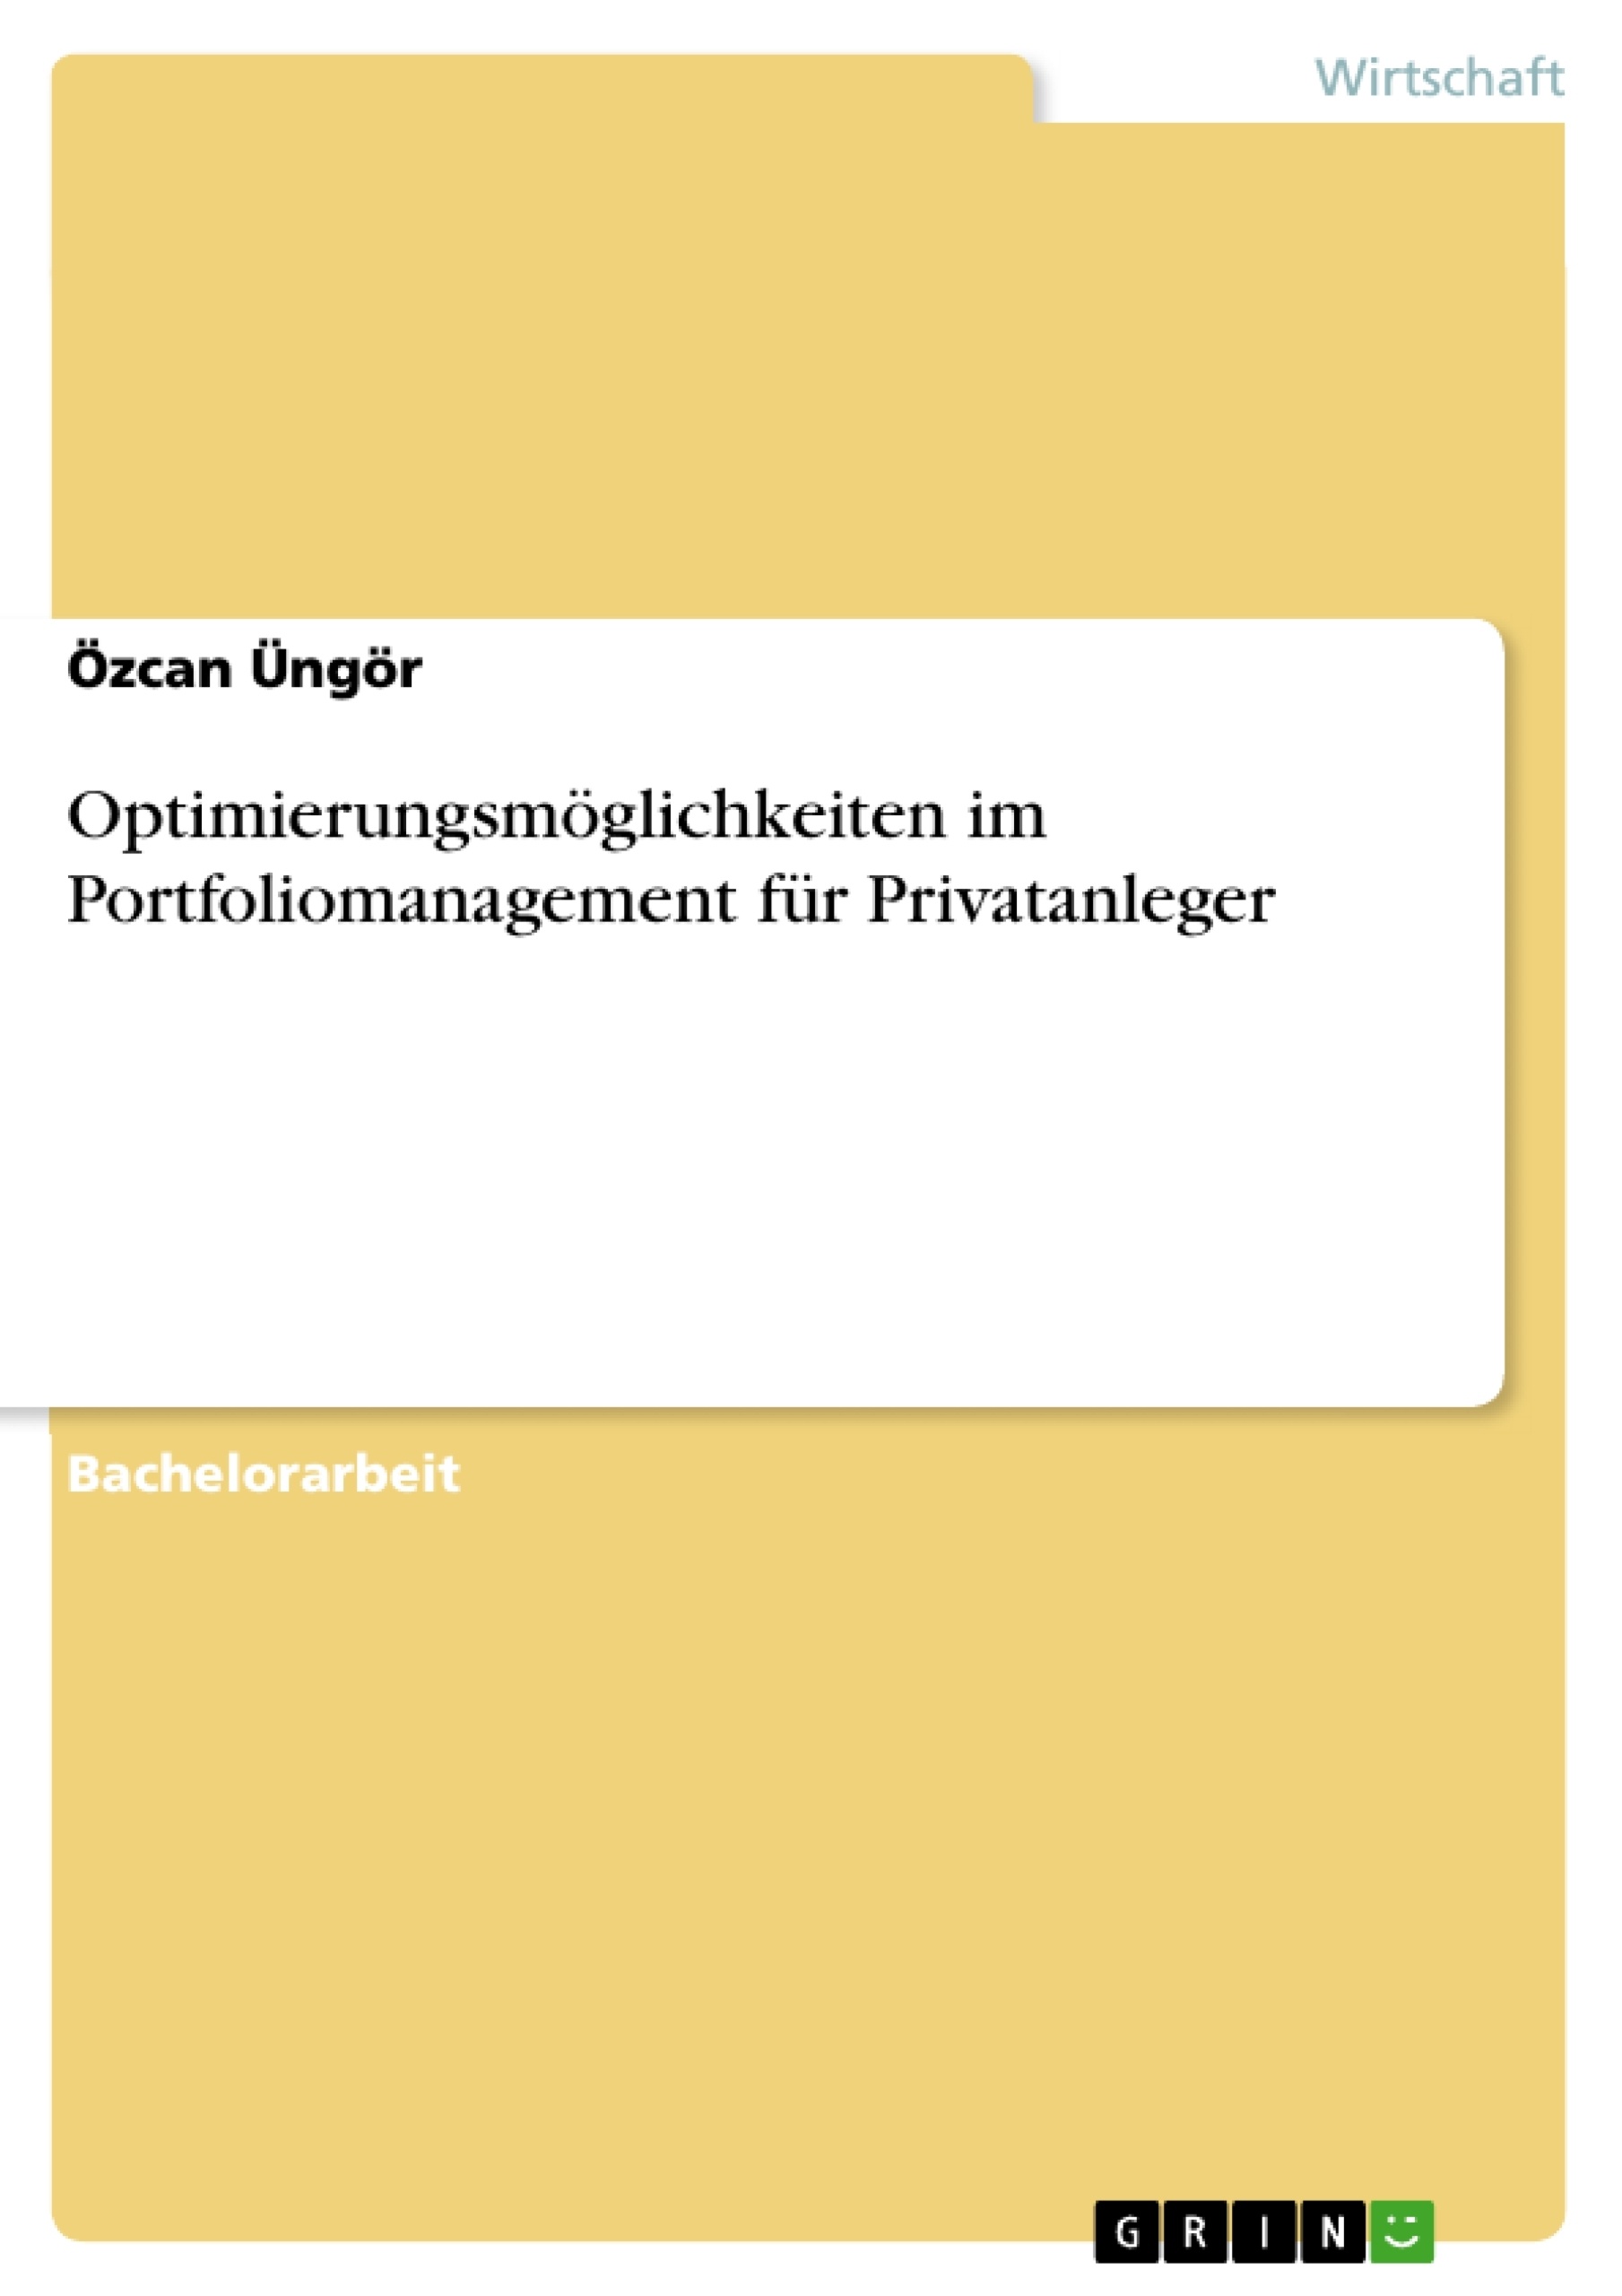 Title: Optimierungsmöglichkeiten im Portfoliomanagement für Privatanleger